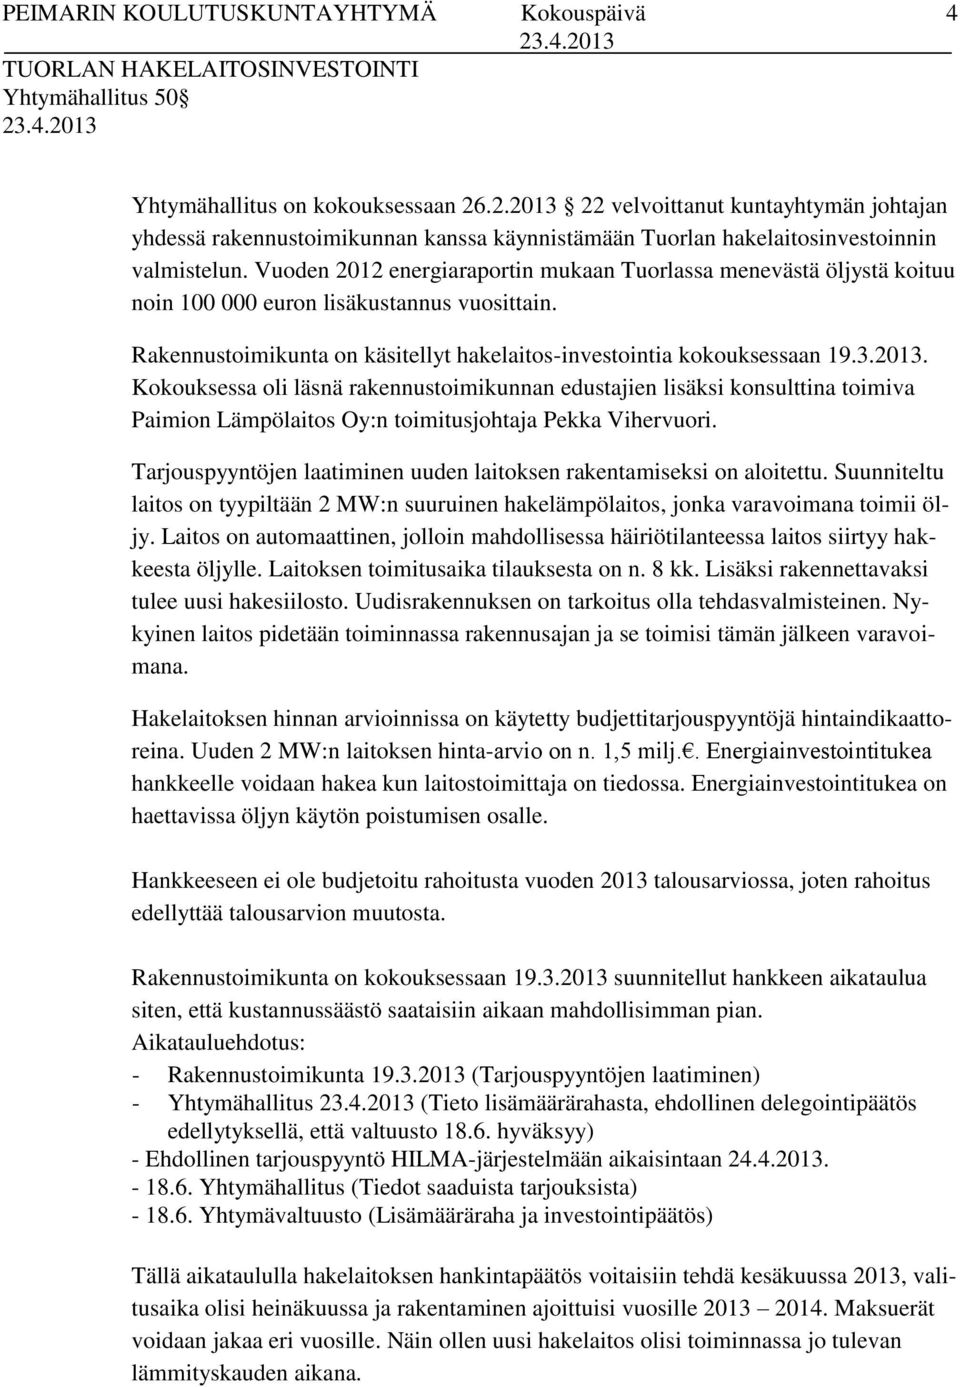 Vuoden 2012 energiaraportin mukaan Tuorlassa menevästä öljystä koituu noin 100 000 euron lisäkustannus vuosittain. Rakennustoimikunta on käsitellyt hakelaitos-investointia kokouksessaan 19.3.2013.